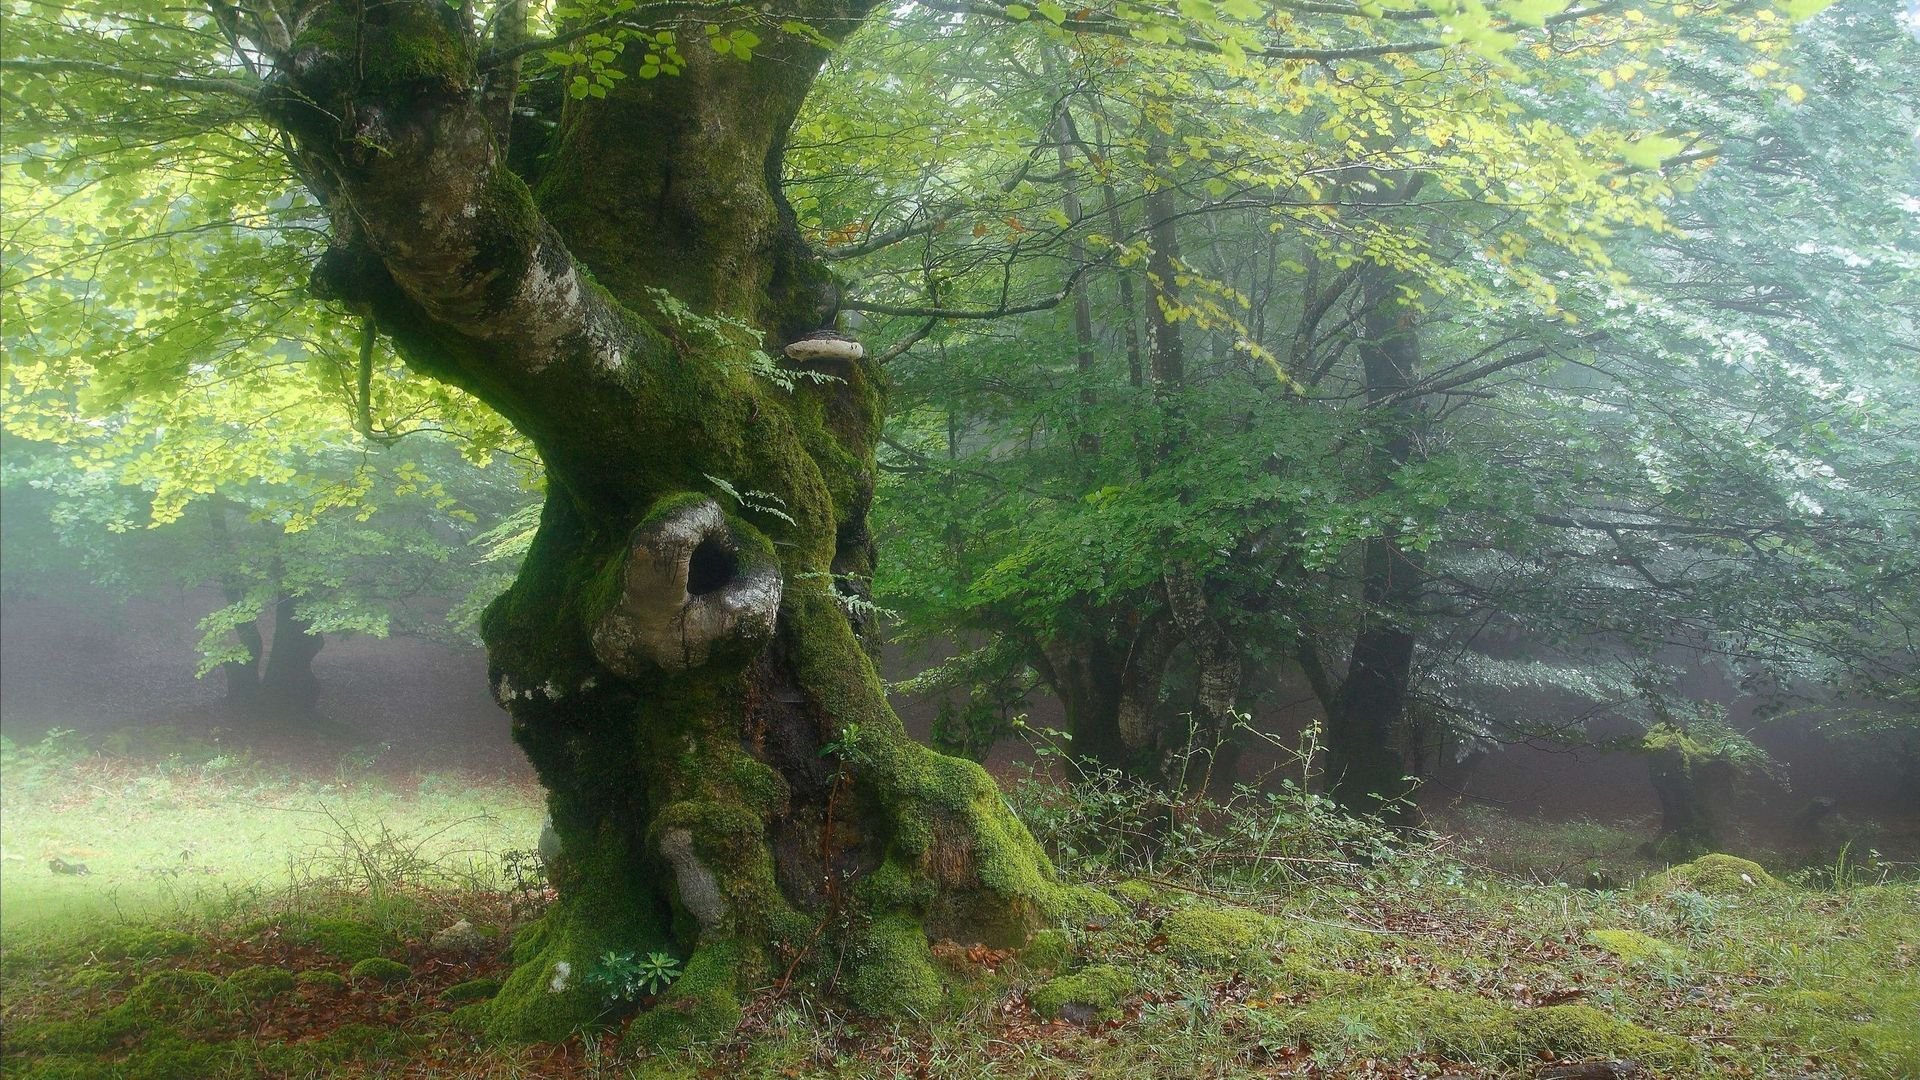 Где то среди леса среди леса. Шервудский лес в Англии. Лесная опушка дремучего леса. Bosco delle Querce (дубовый лес). Беловежская пуща деревья.